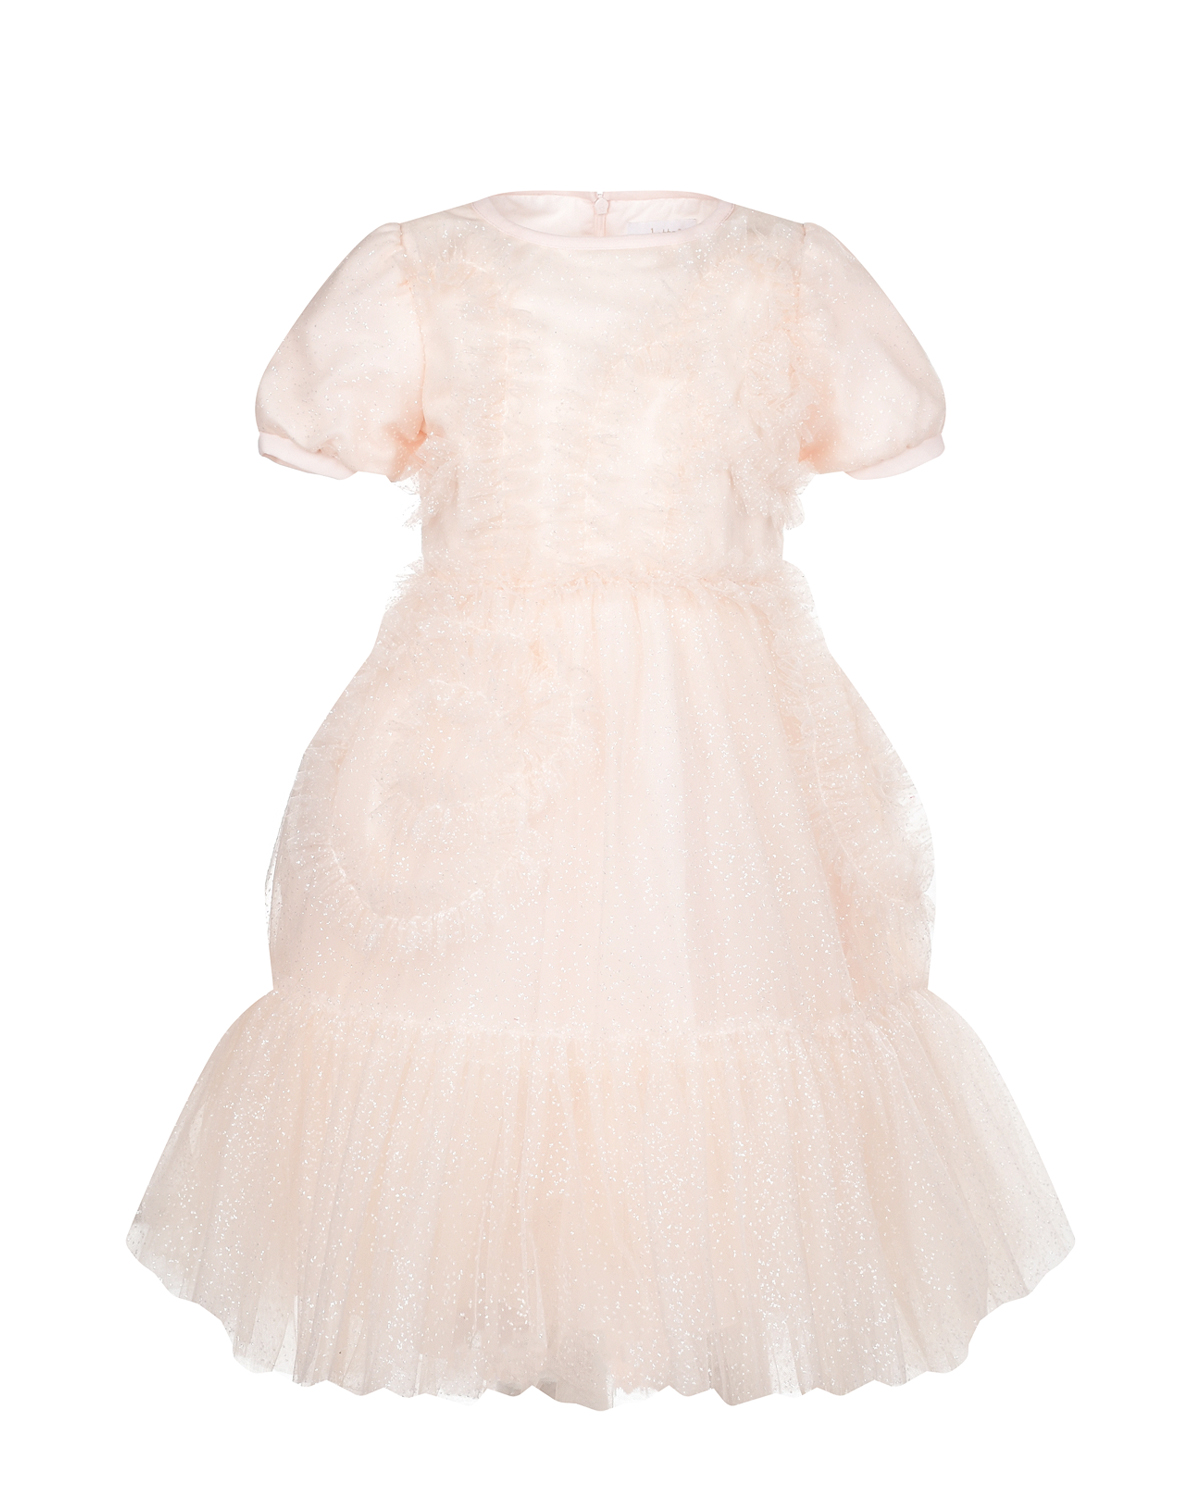 Платье персикового цвета с рюшами Aletta детское